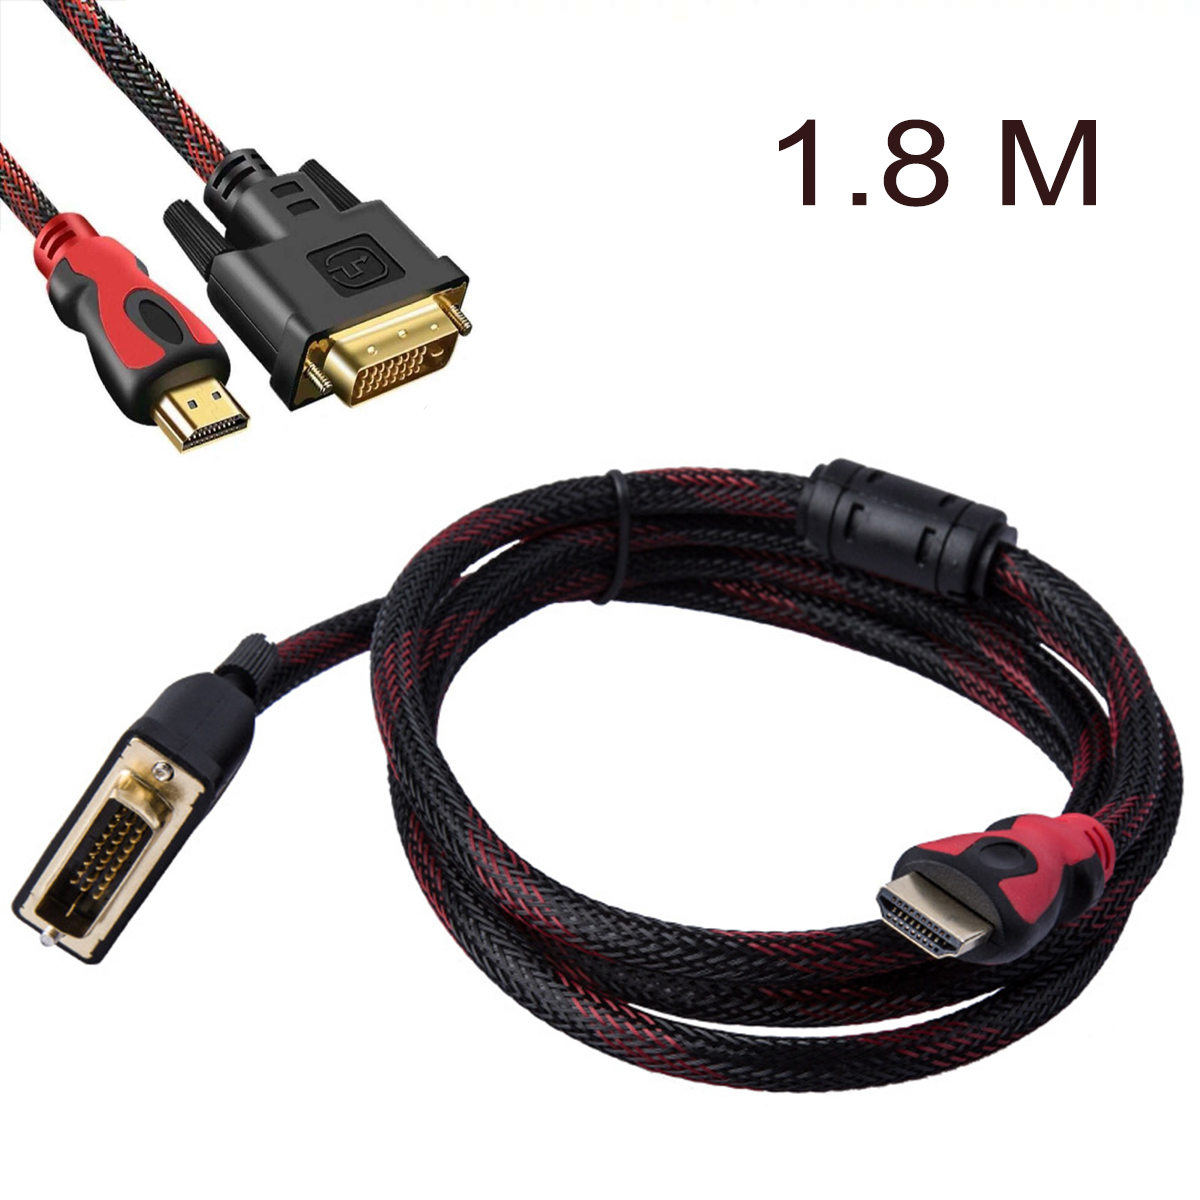 สาย DVI+24 1 TO HDMI cable 1.8m ซื้อขาย สายสัญญาณแบบ DVI ออนไลน์ในราคาที่ถูกกว่า